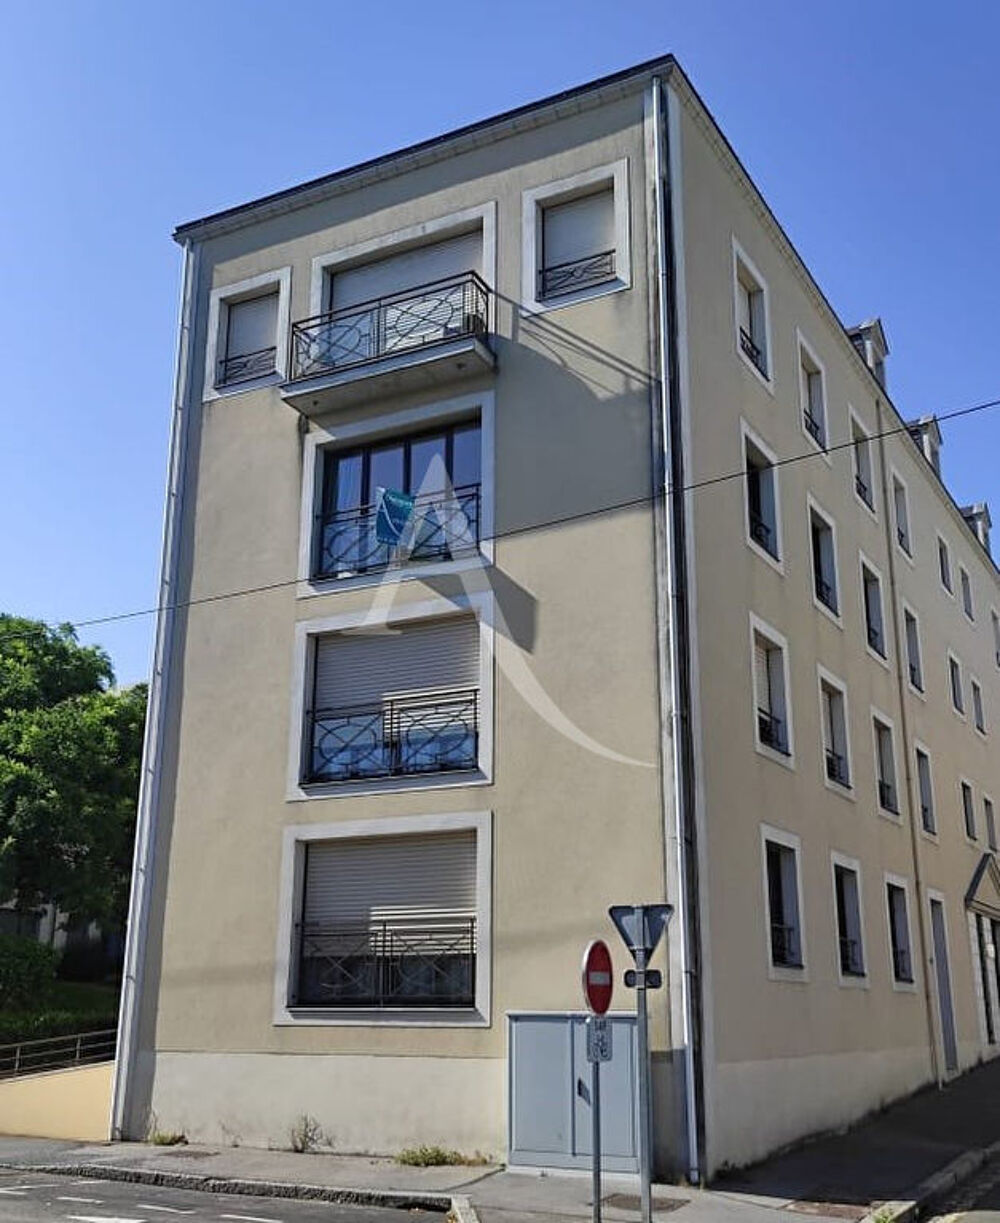 Vente Appartement Appartement de standing avec vue sur la Mayenne, Chteau-Gontier -  2 chambres - 116 m2 Chateau gontier sur mayenne